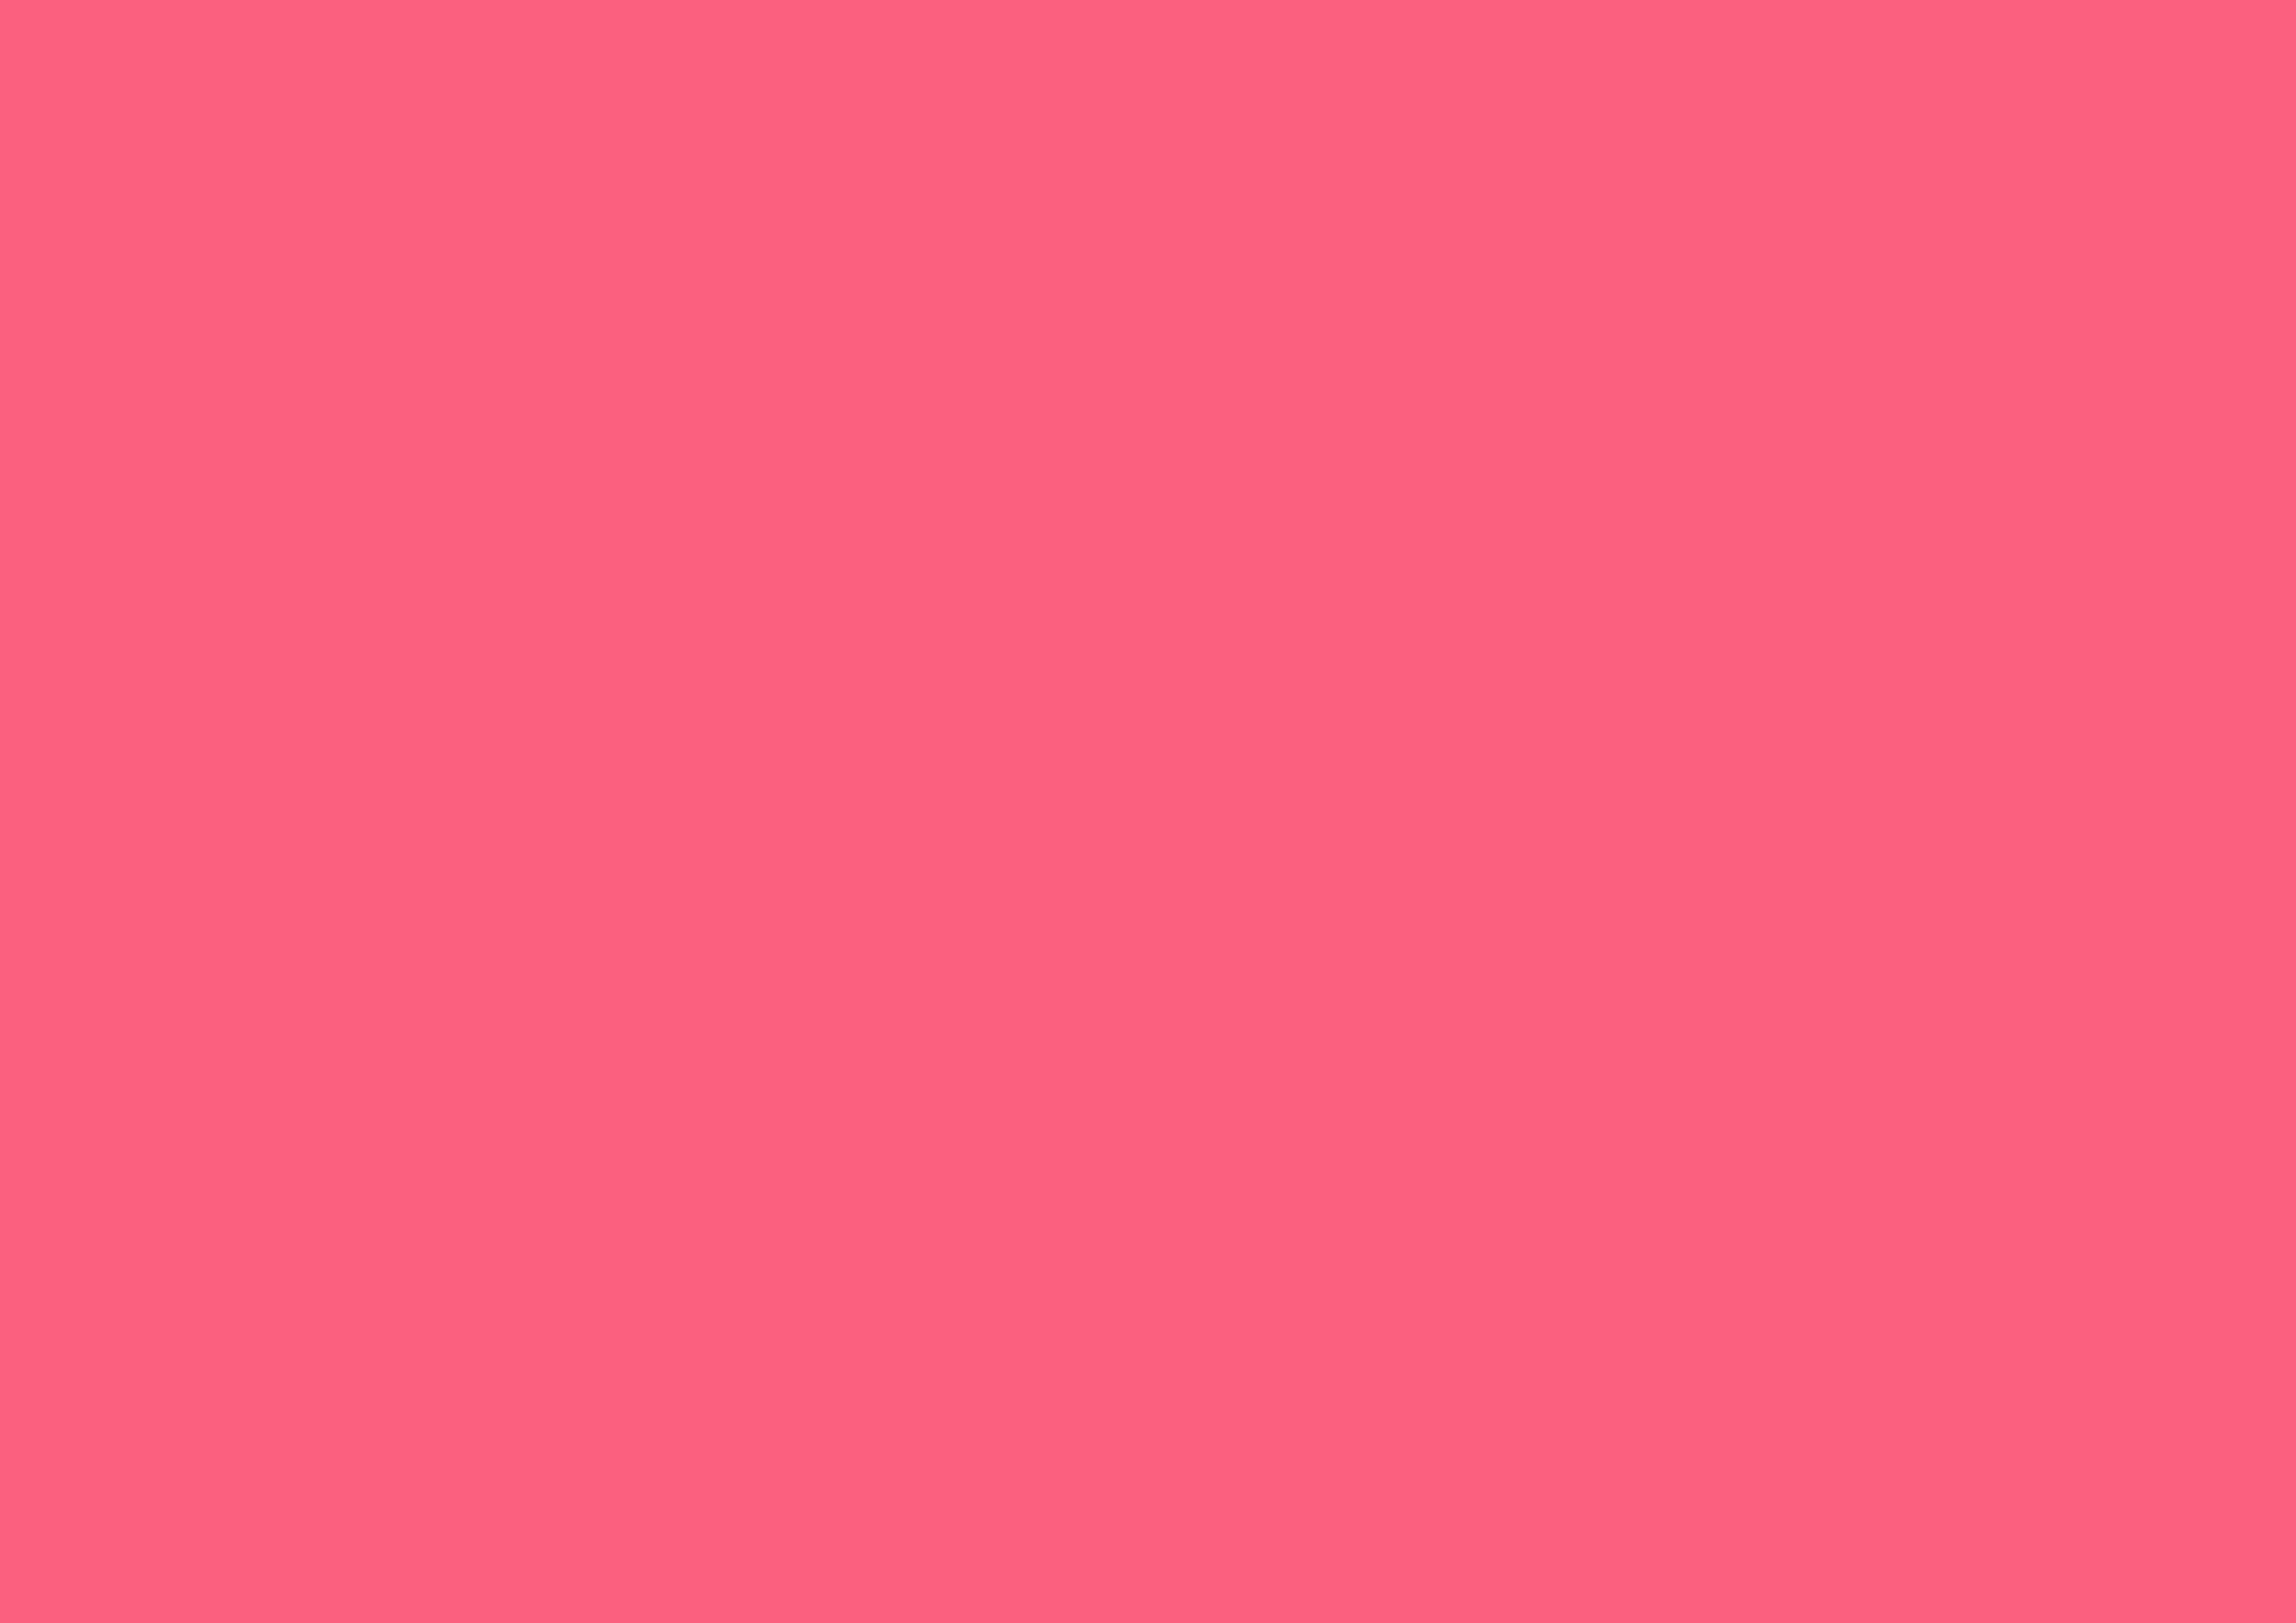 3508x2480 Brink Pink Solid Color Background